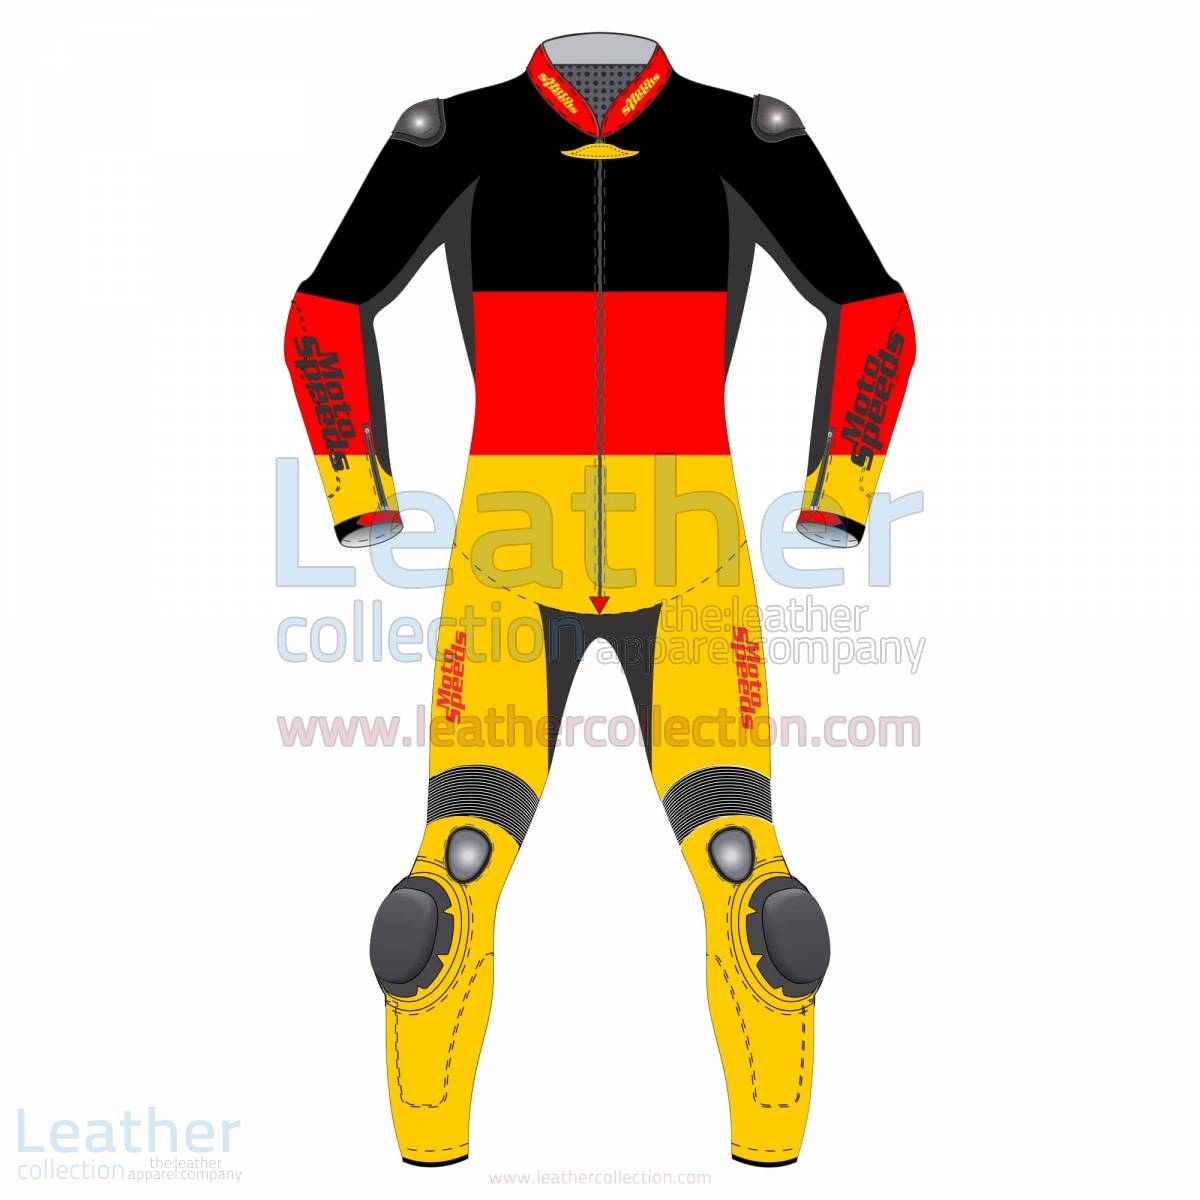 German Flag Motorcycle Racing Suit